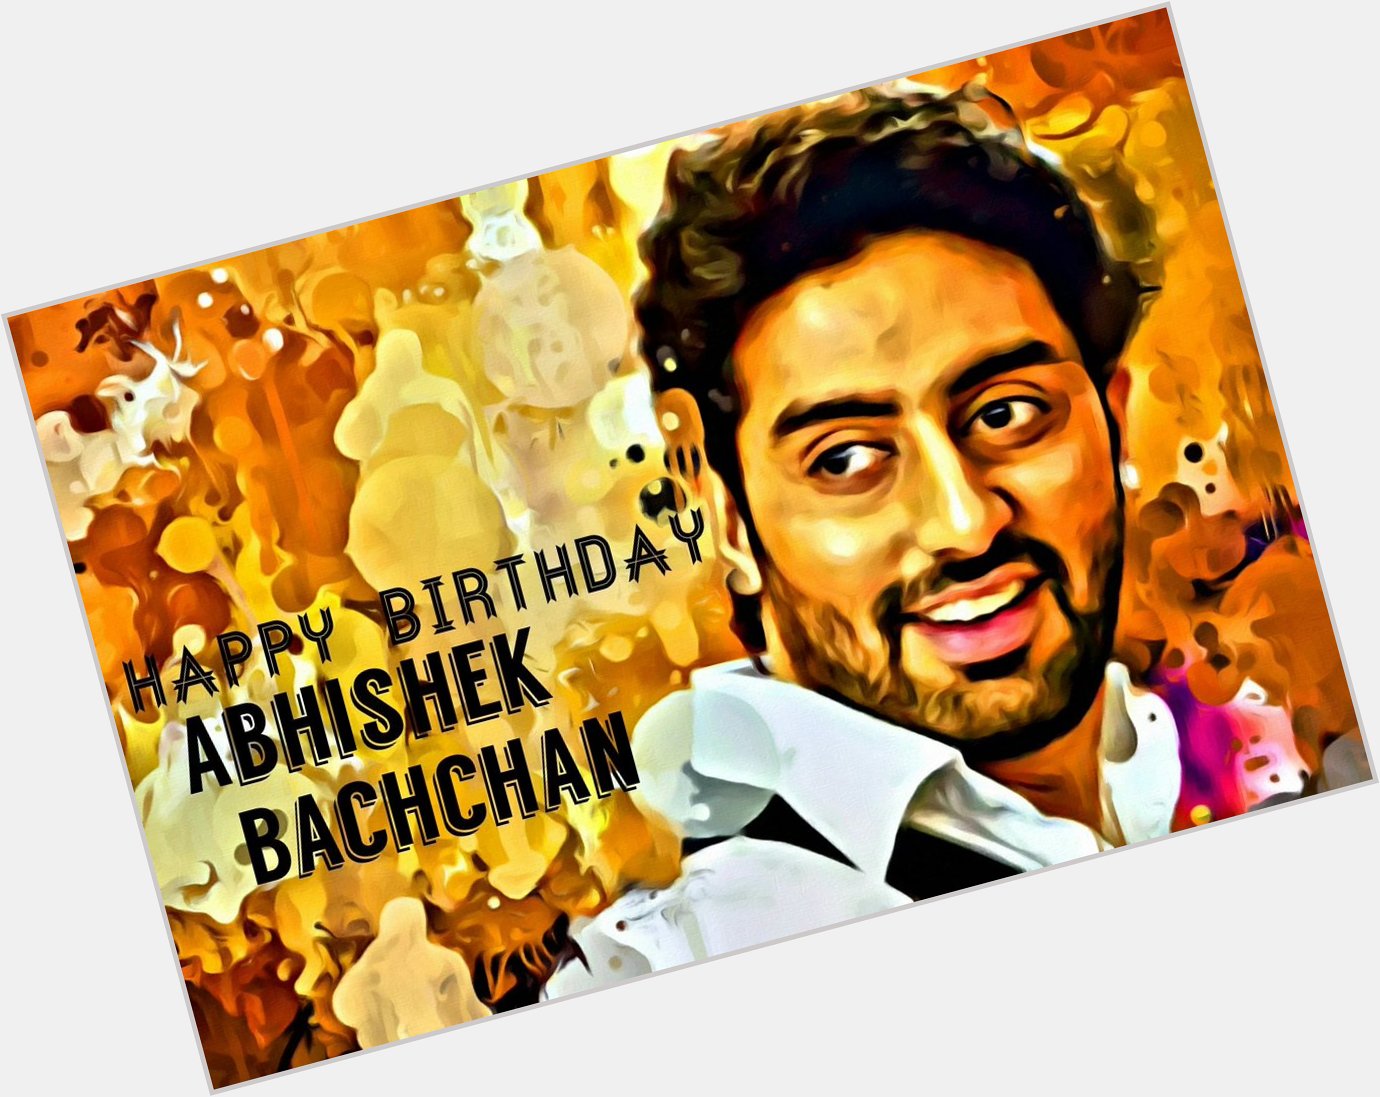  Happy birthday Abhishek bachchan 